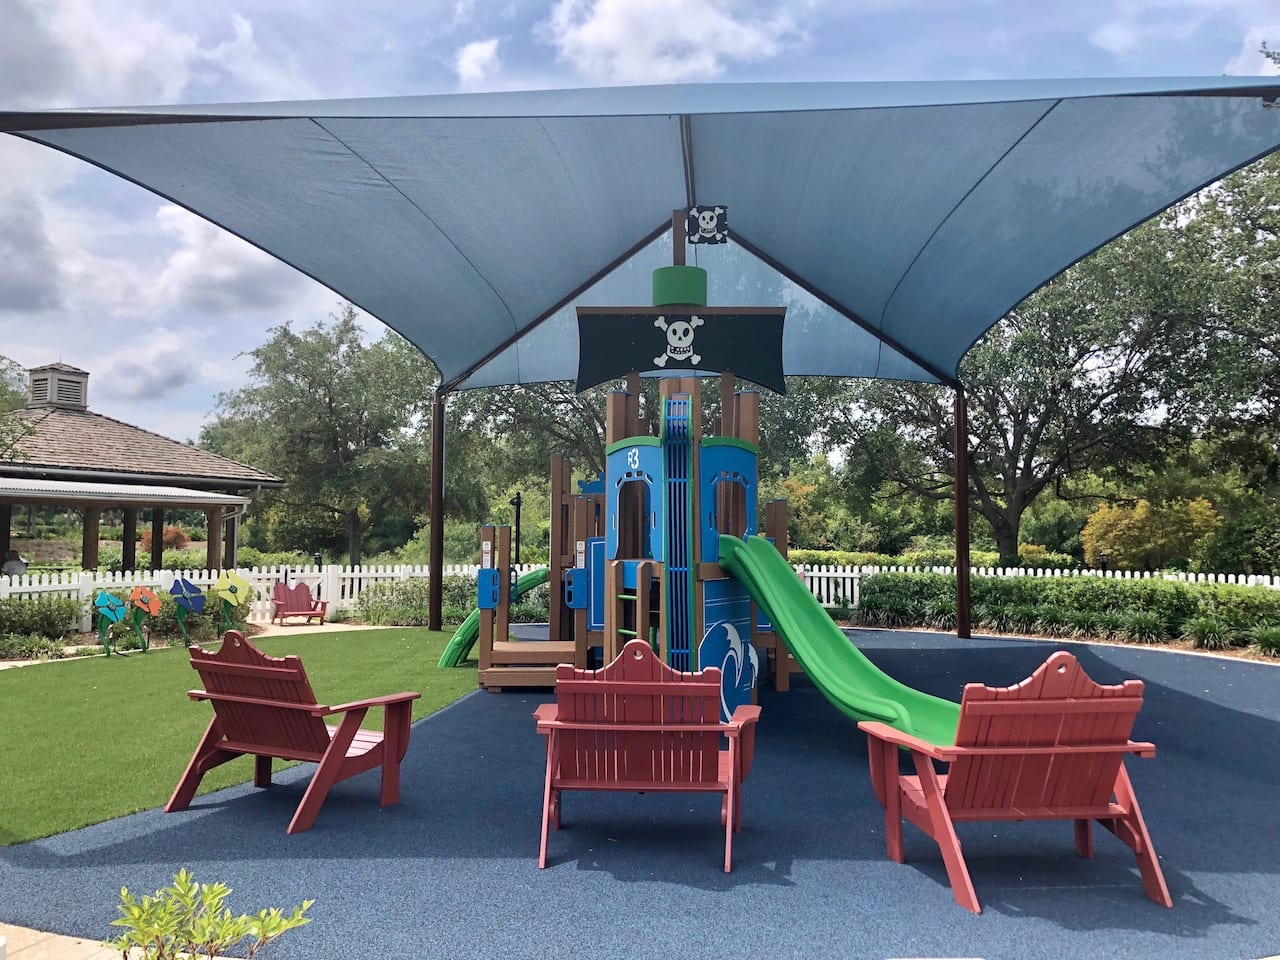 The Wilkerson Creek Park Children's Playground